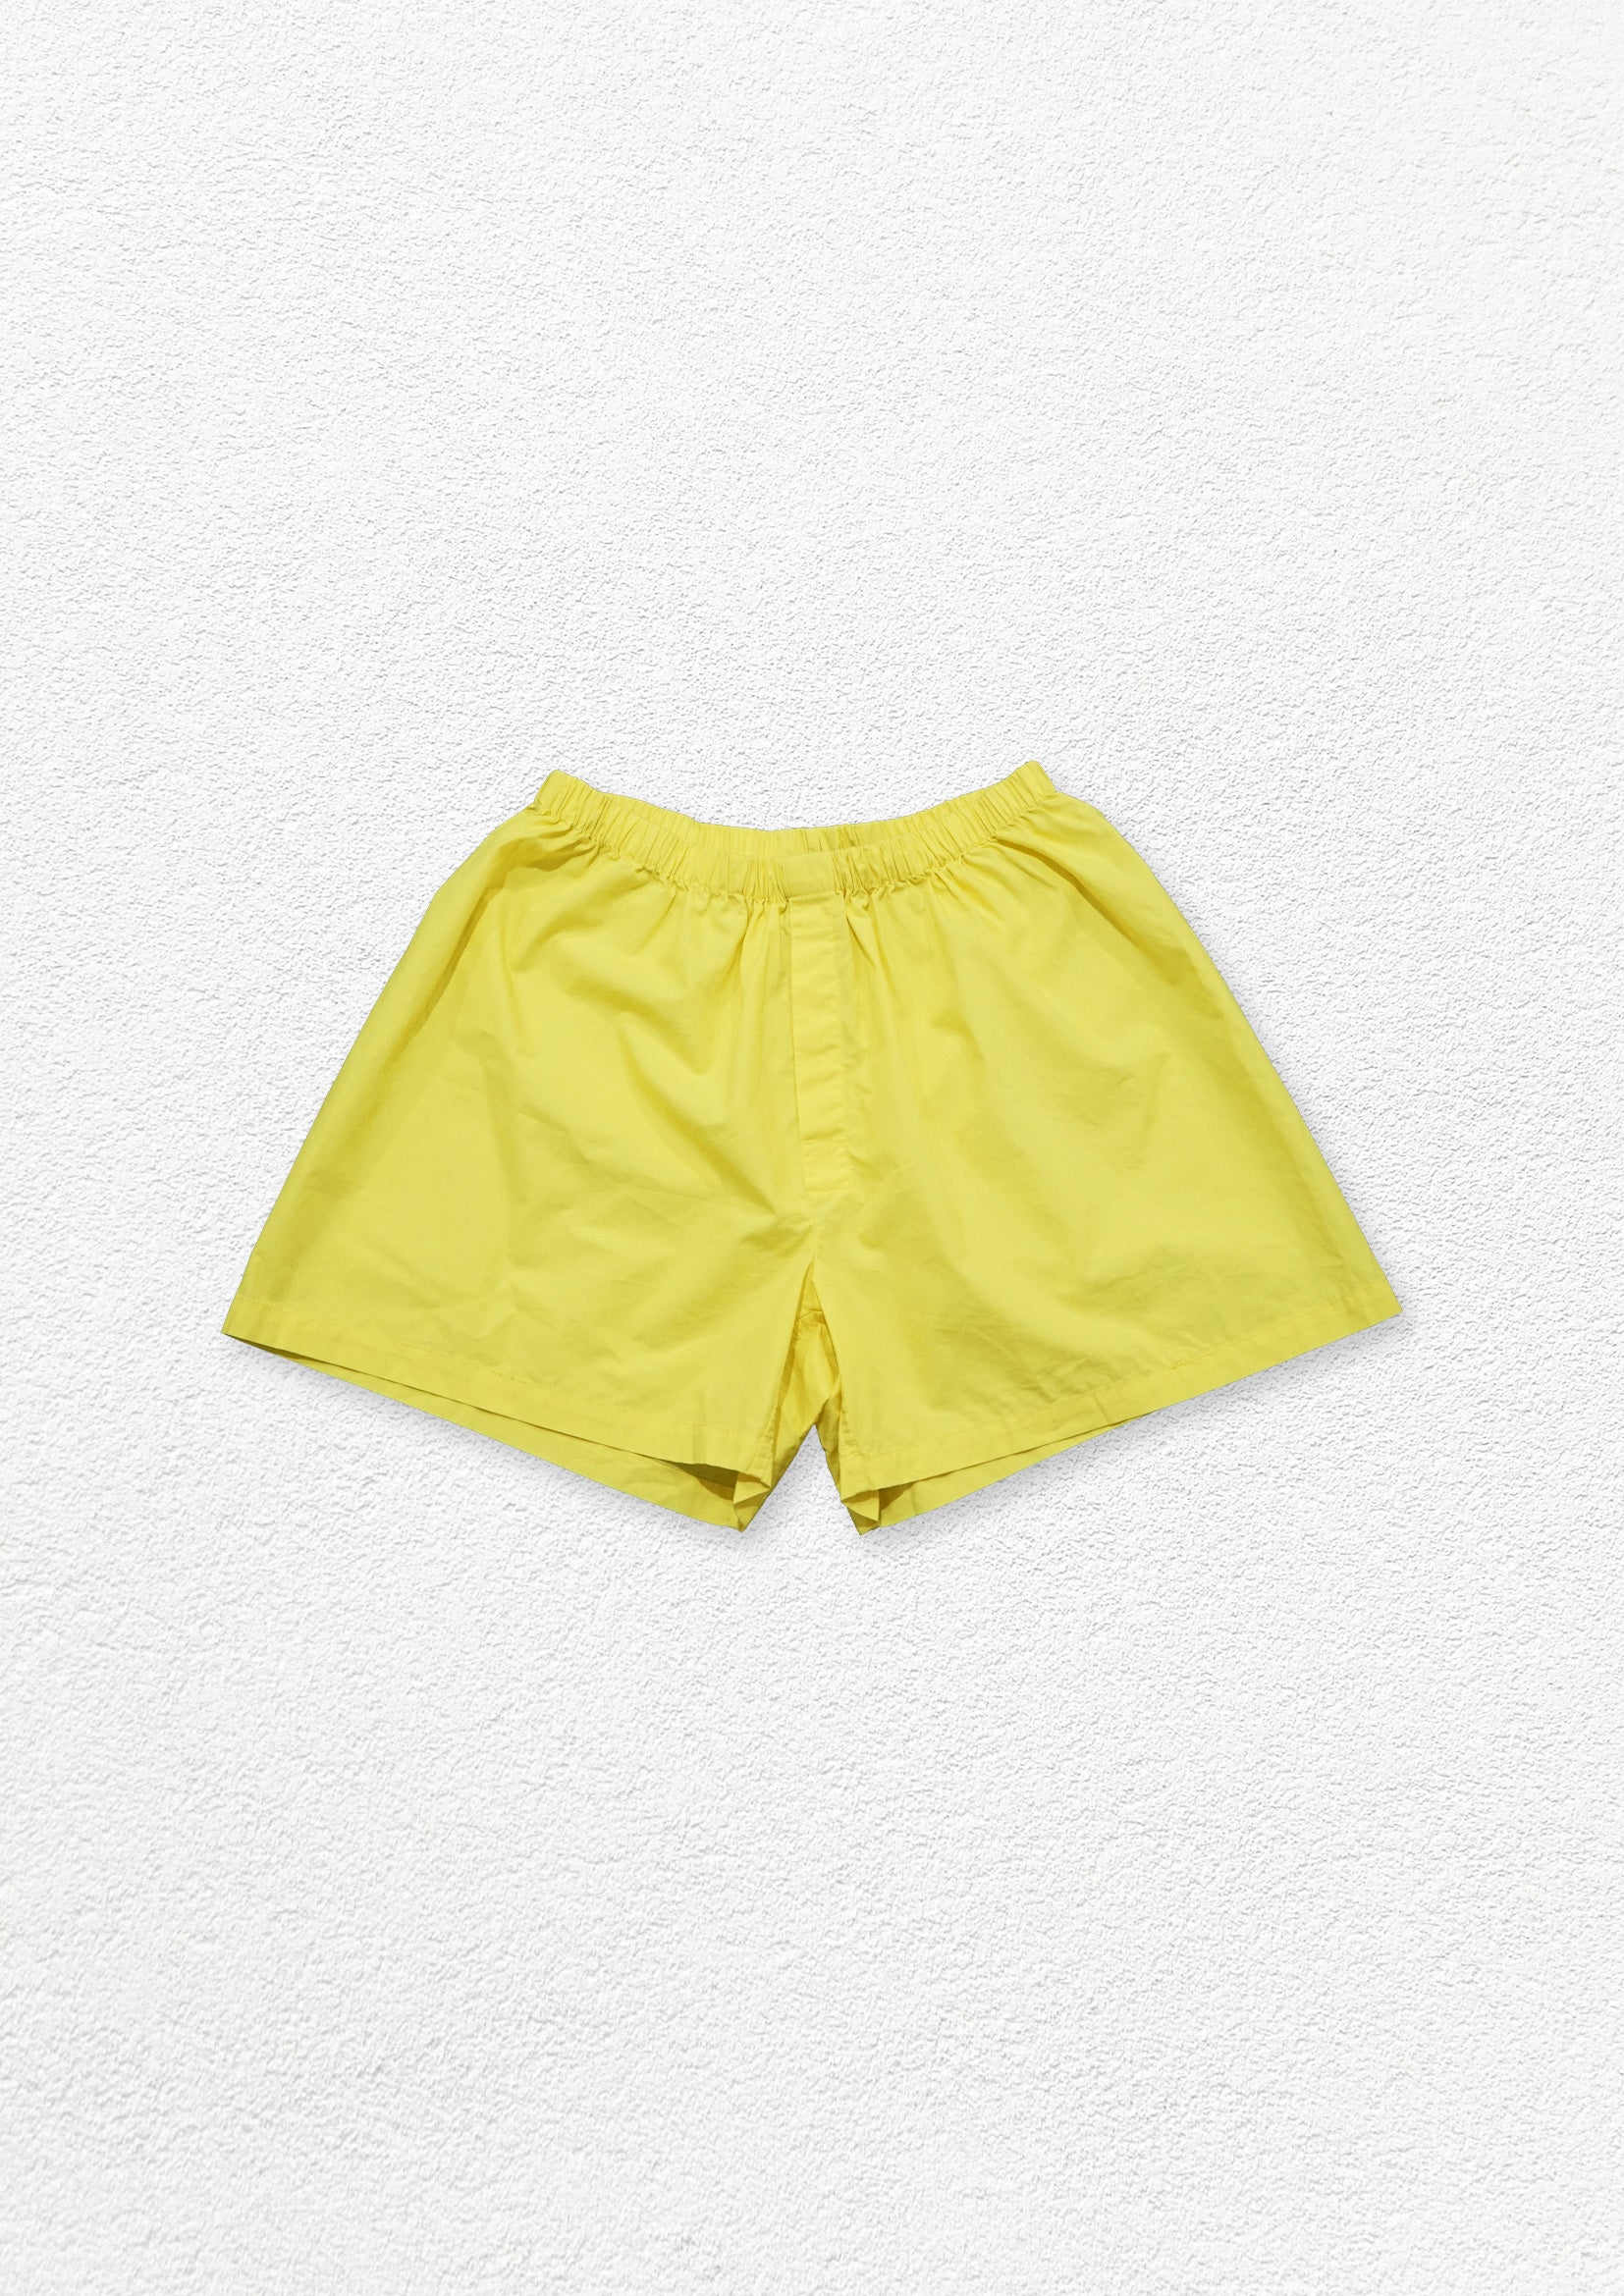 Unisex boxer shorts underwear - yellow